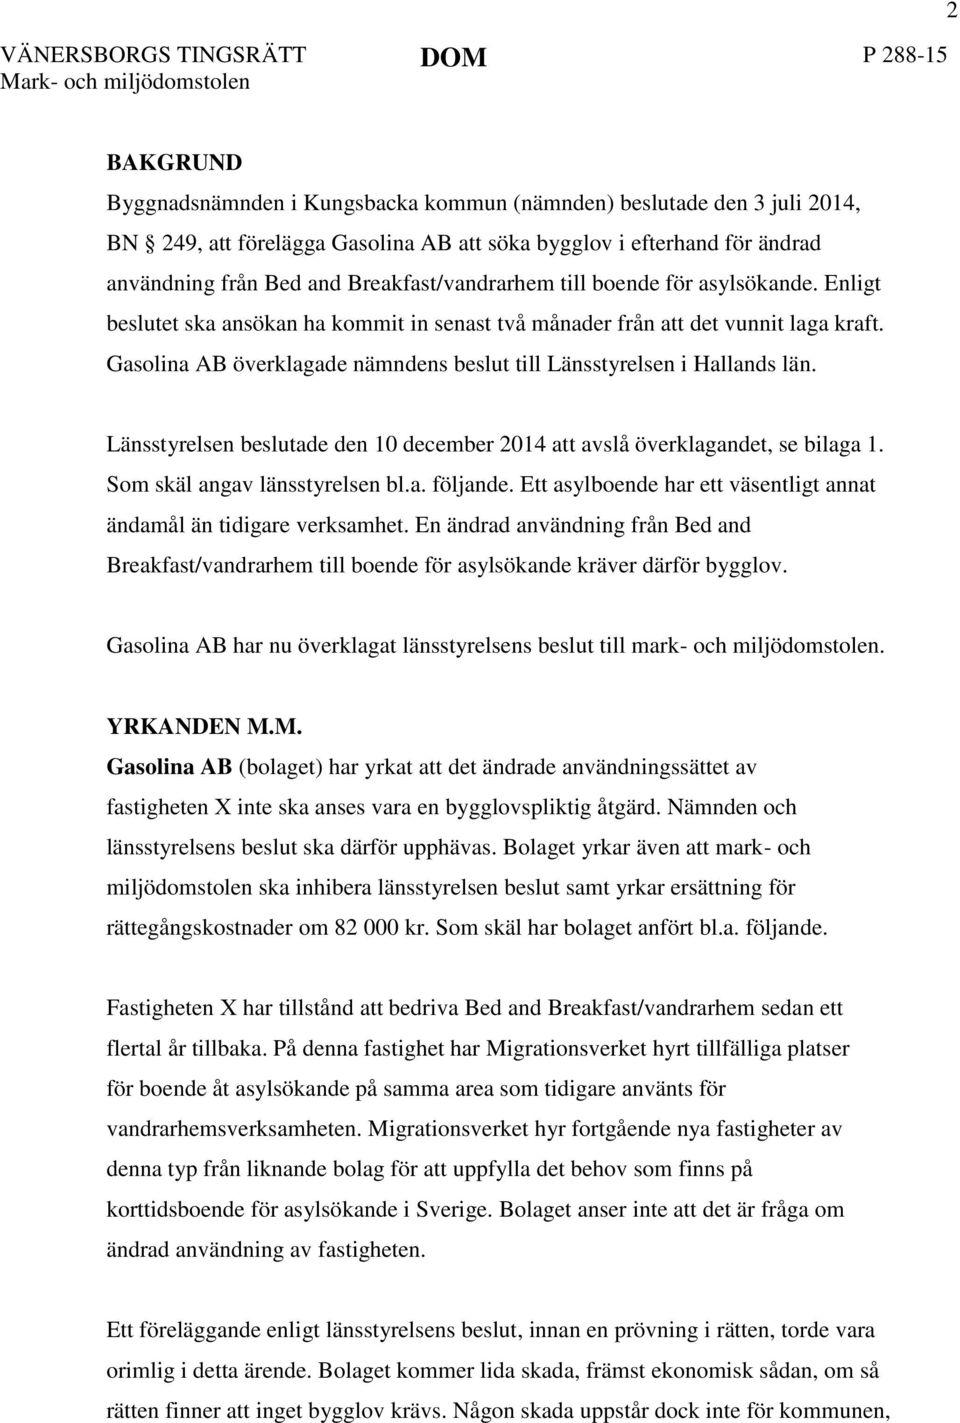 Gasolina AB överklagade nämndens beslut till Länsstyrelsen i Hallands län. Länsstyrelsen beslutade den 10 december 2014 att avslå överklagandet, se bilaga 1. Som skäl angav länsstyrelsen bl.a. följande.